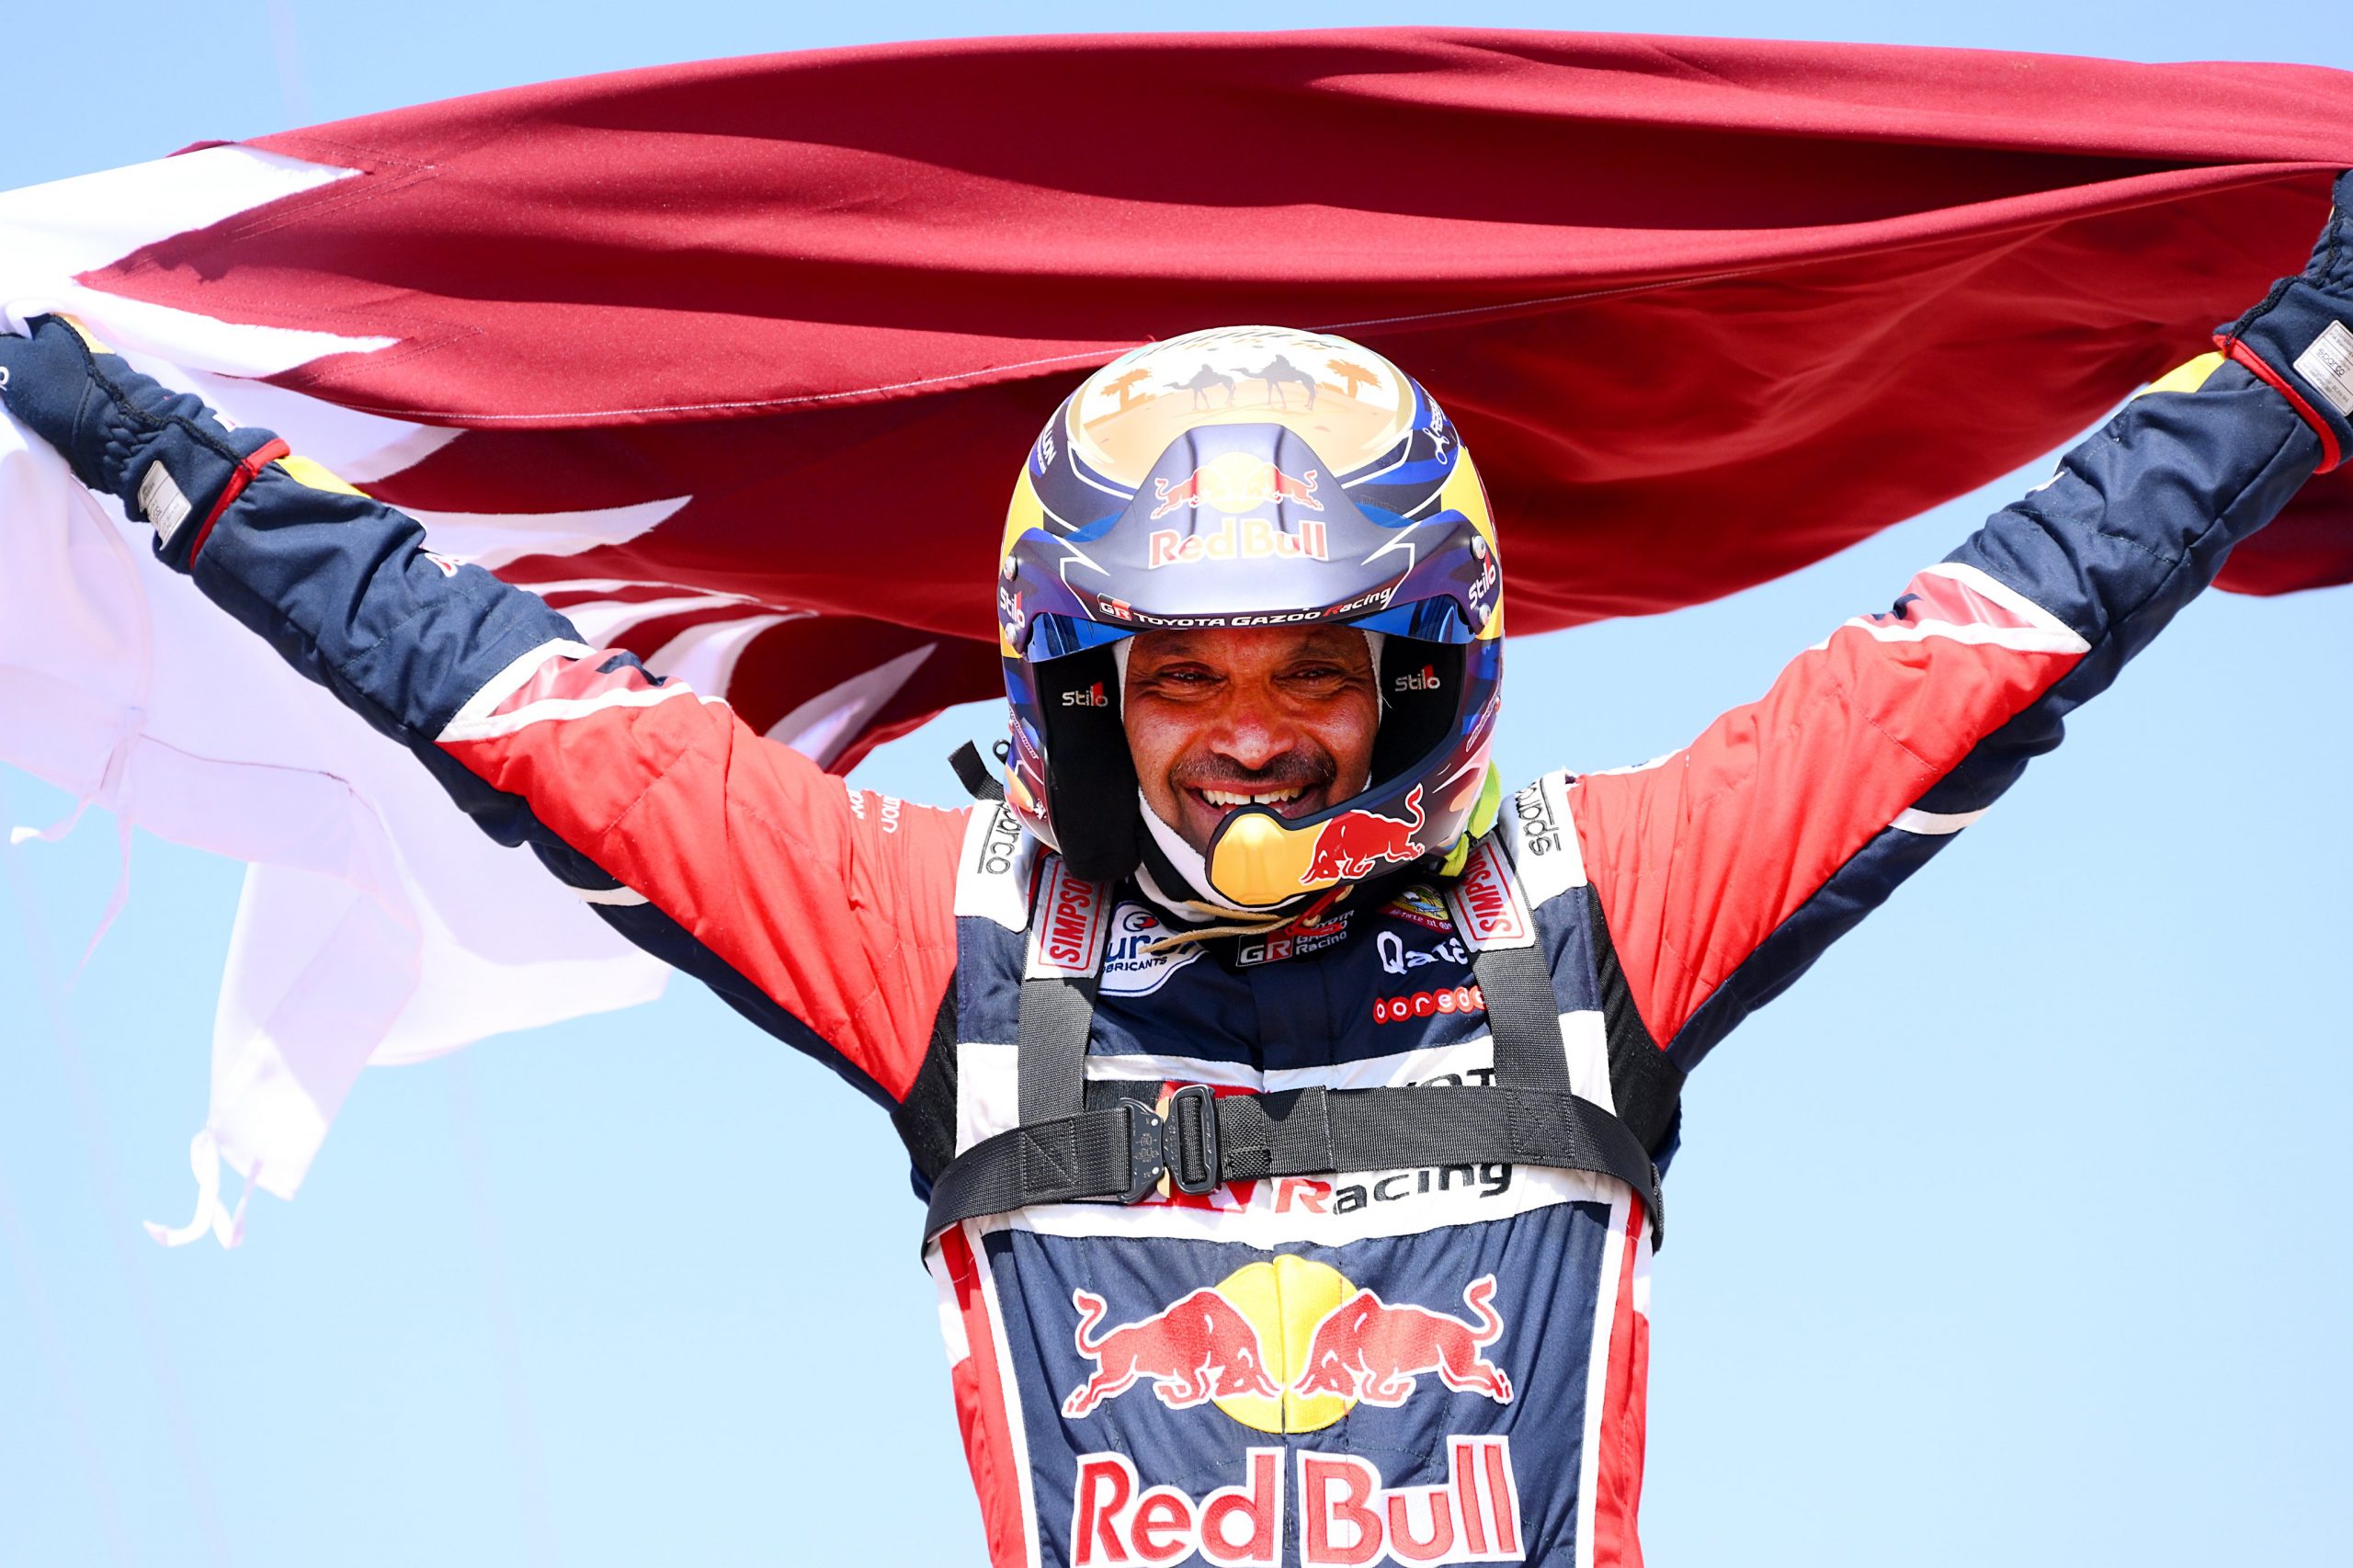 Qatar's Nasser Al-Attiyah Wins Dakar Rally for Fourth Time